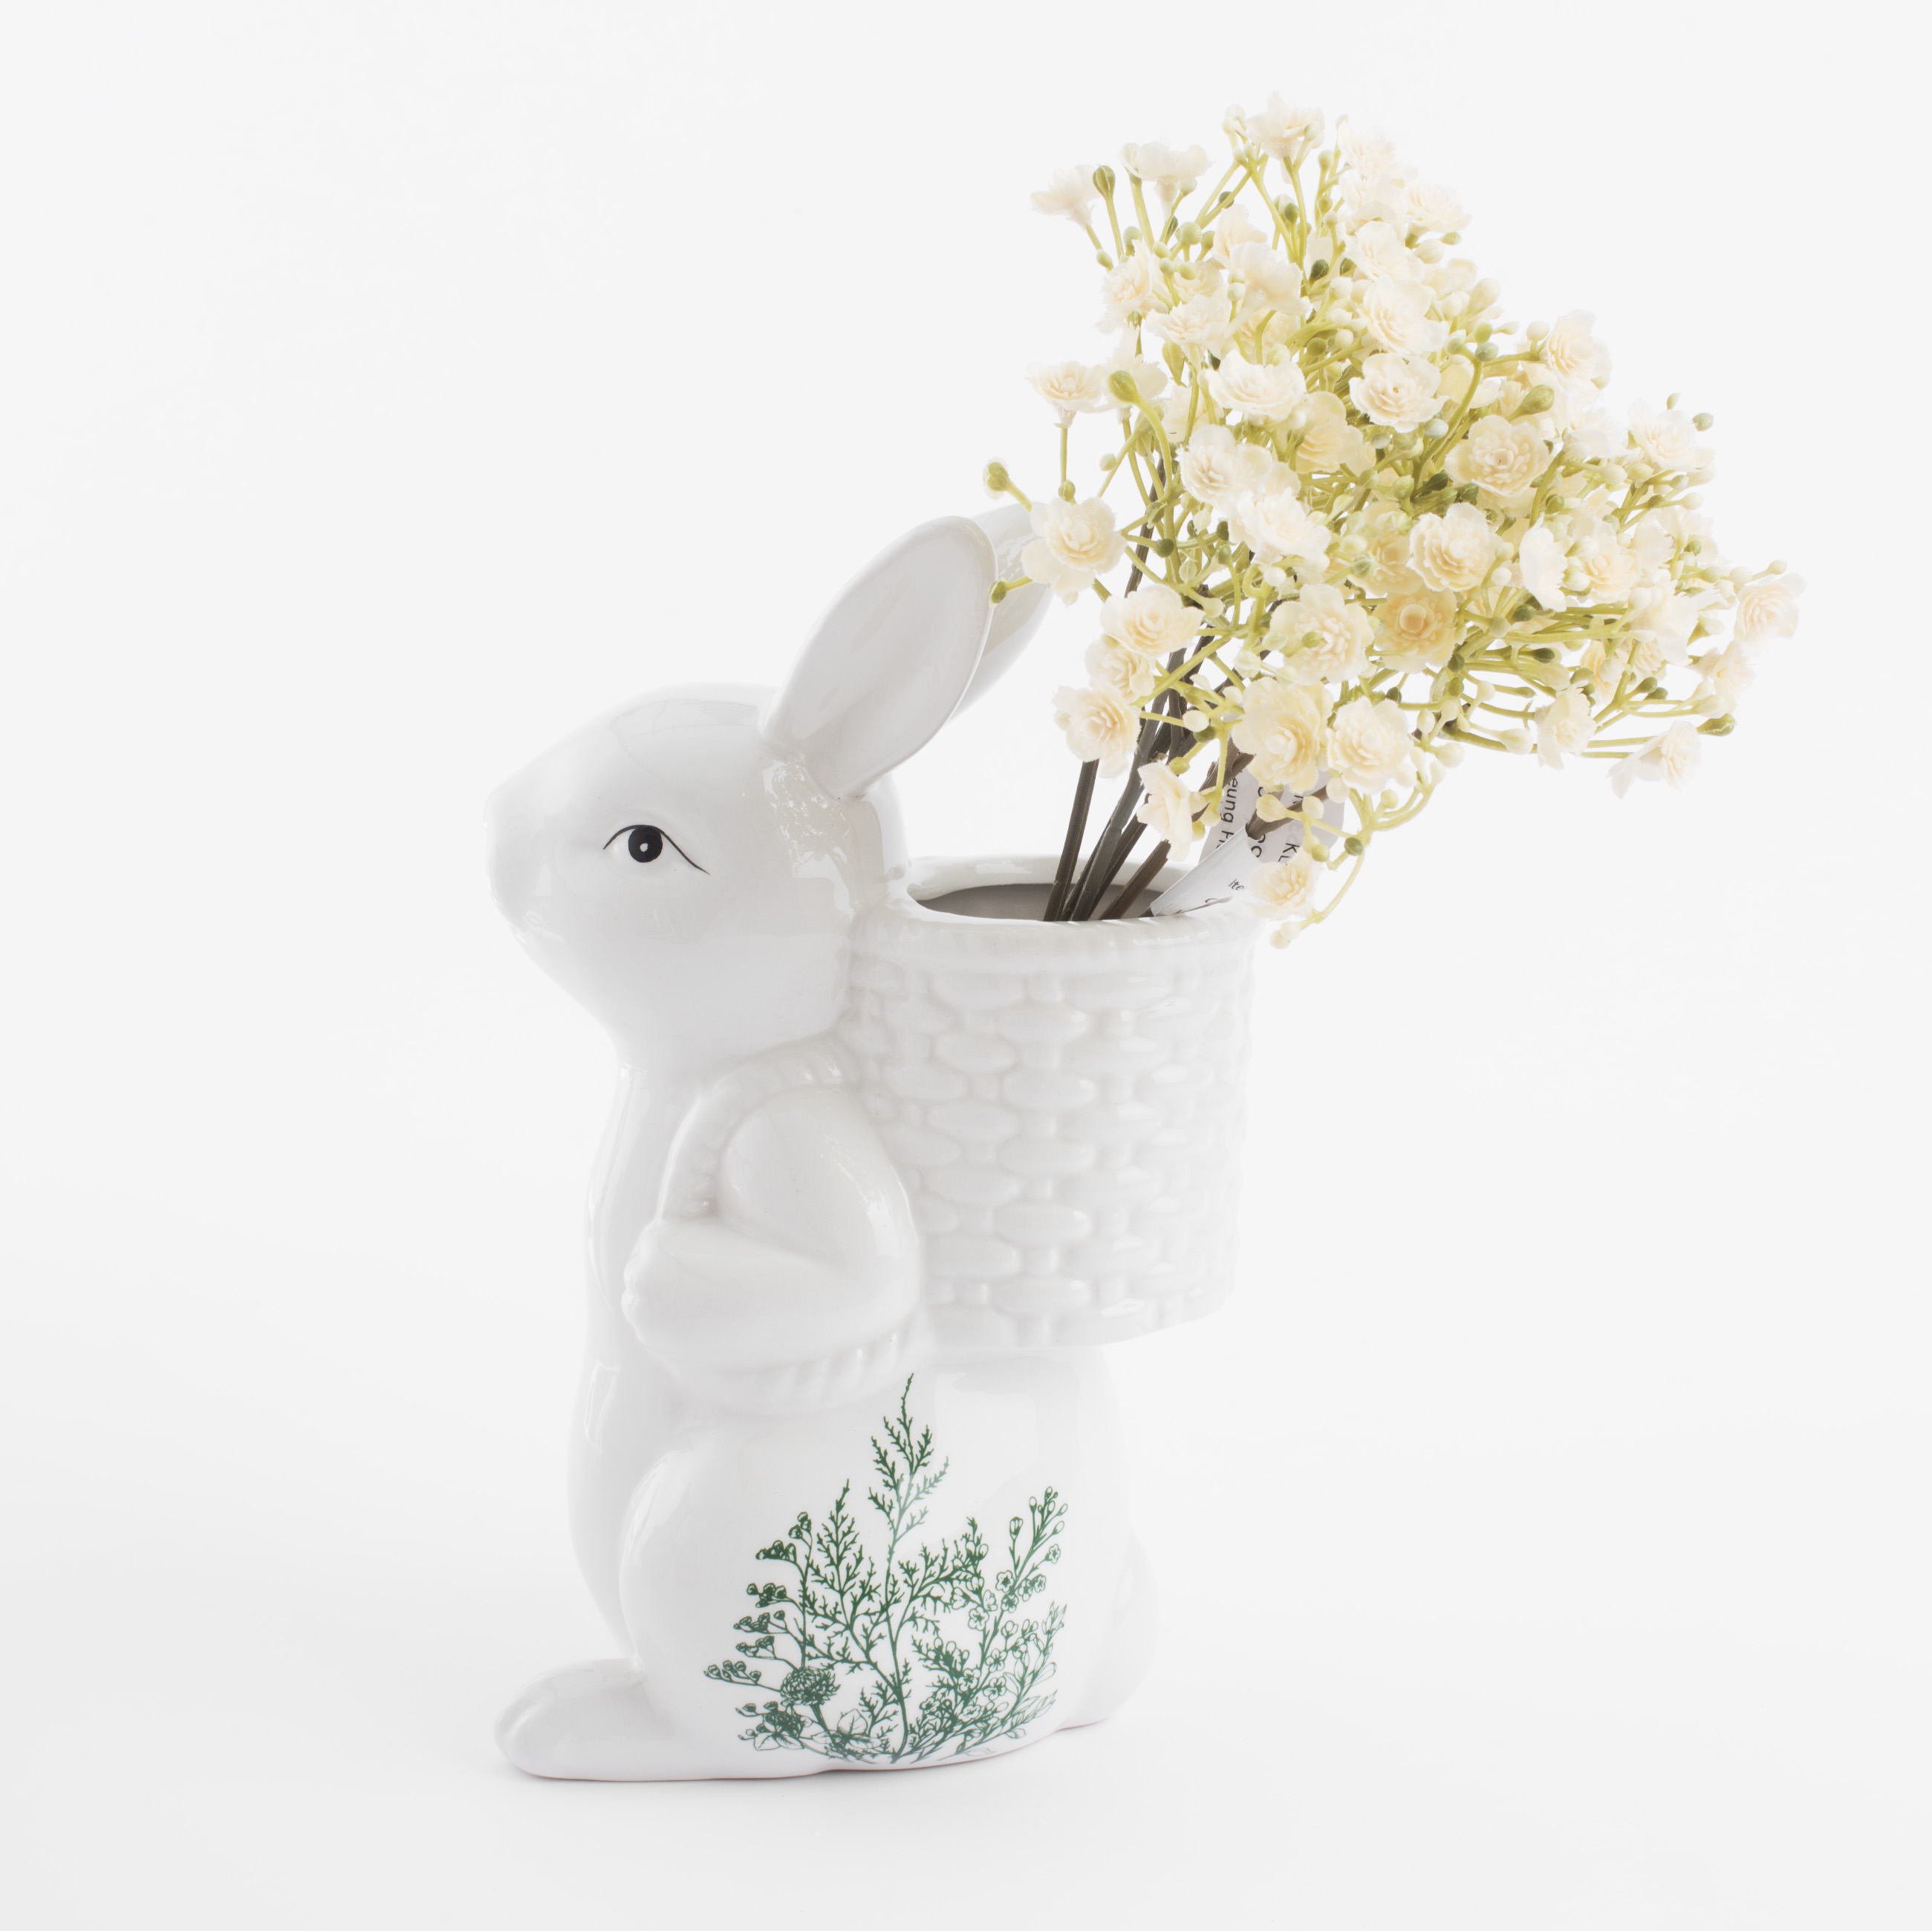 Ваза для цветов, 22 см, декоративная, керамика, бело-зеленая, Кролик с корзиной, Easter blooming изображение № 6